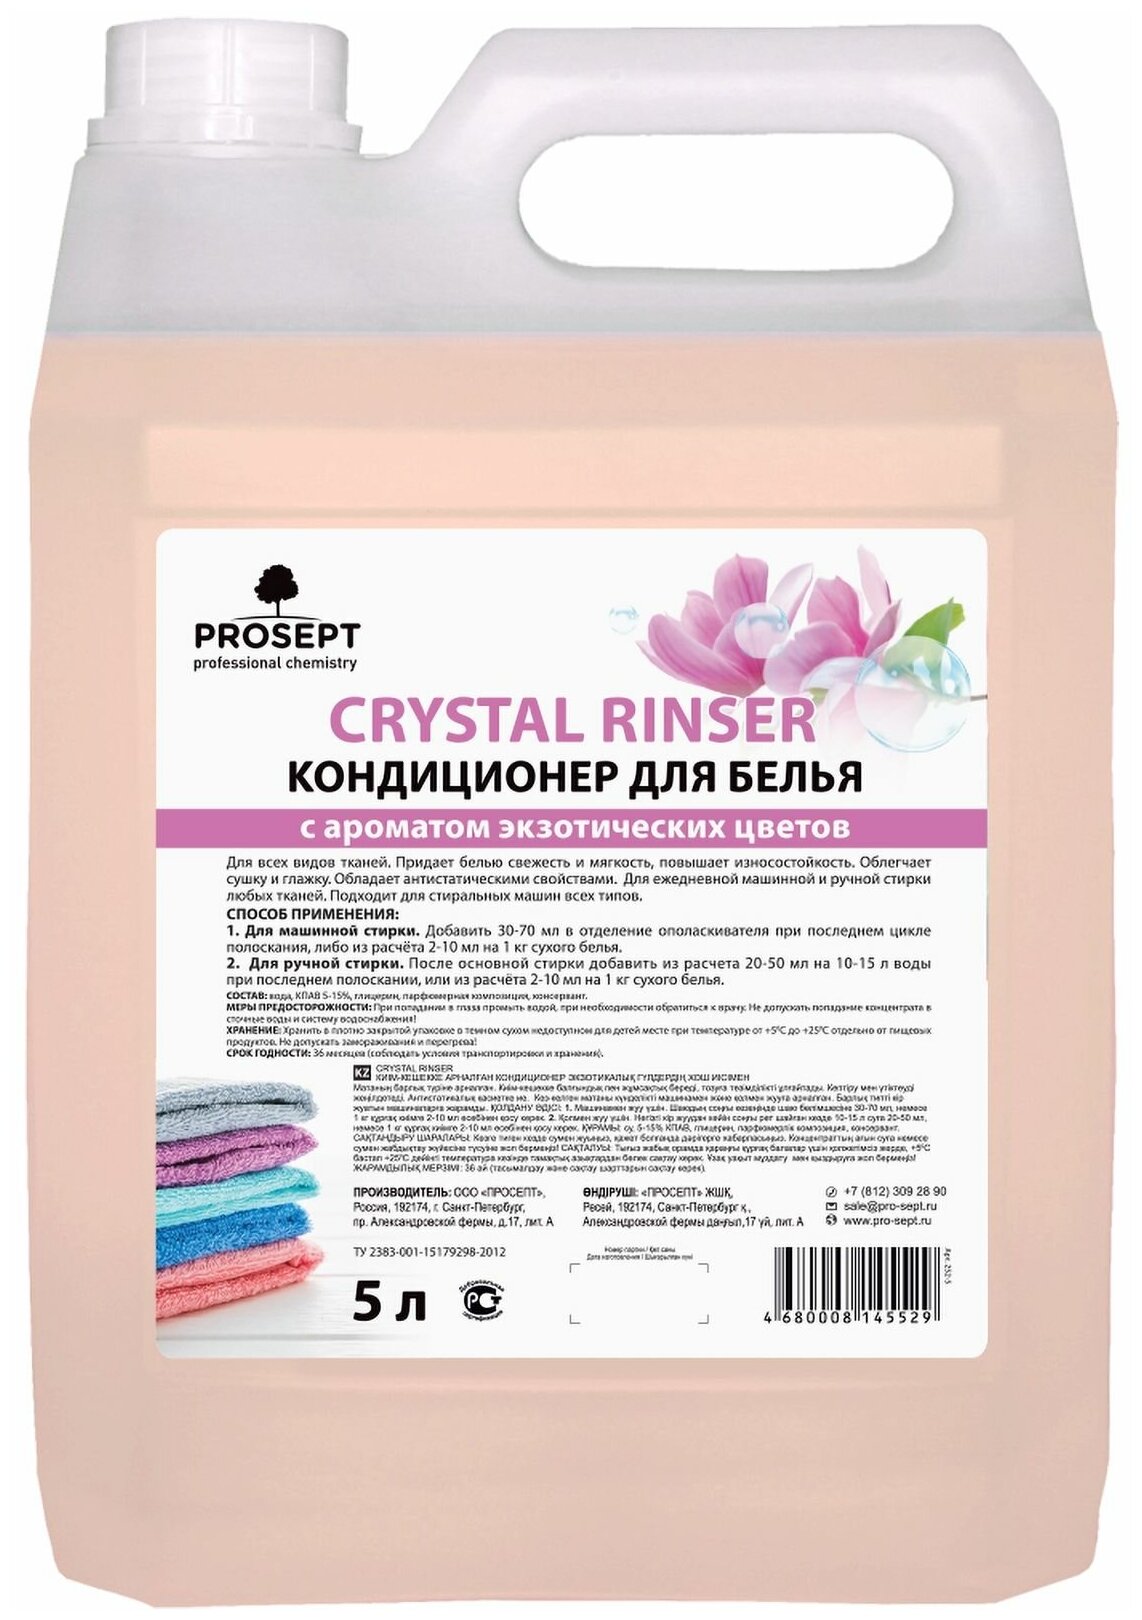 Кондиционер для белья "Экзотические цветы" PROSEPT Crystal Rinser, 5 л.